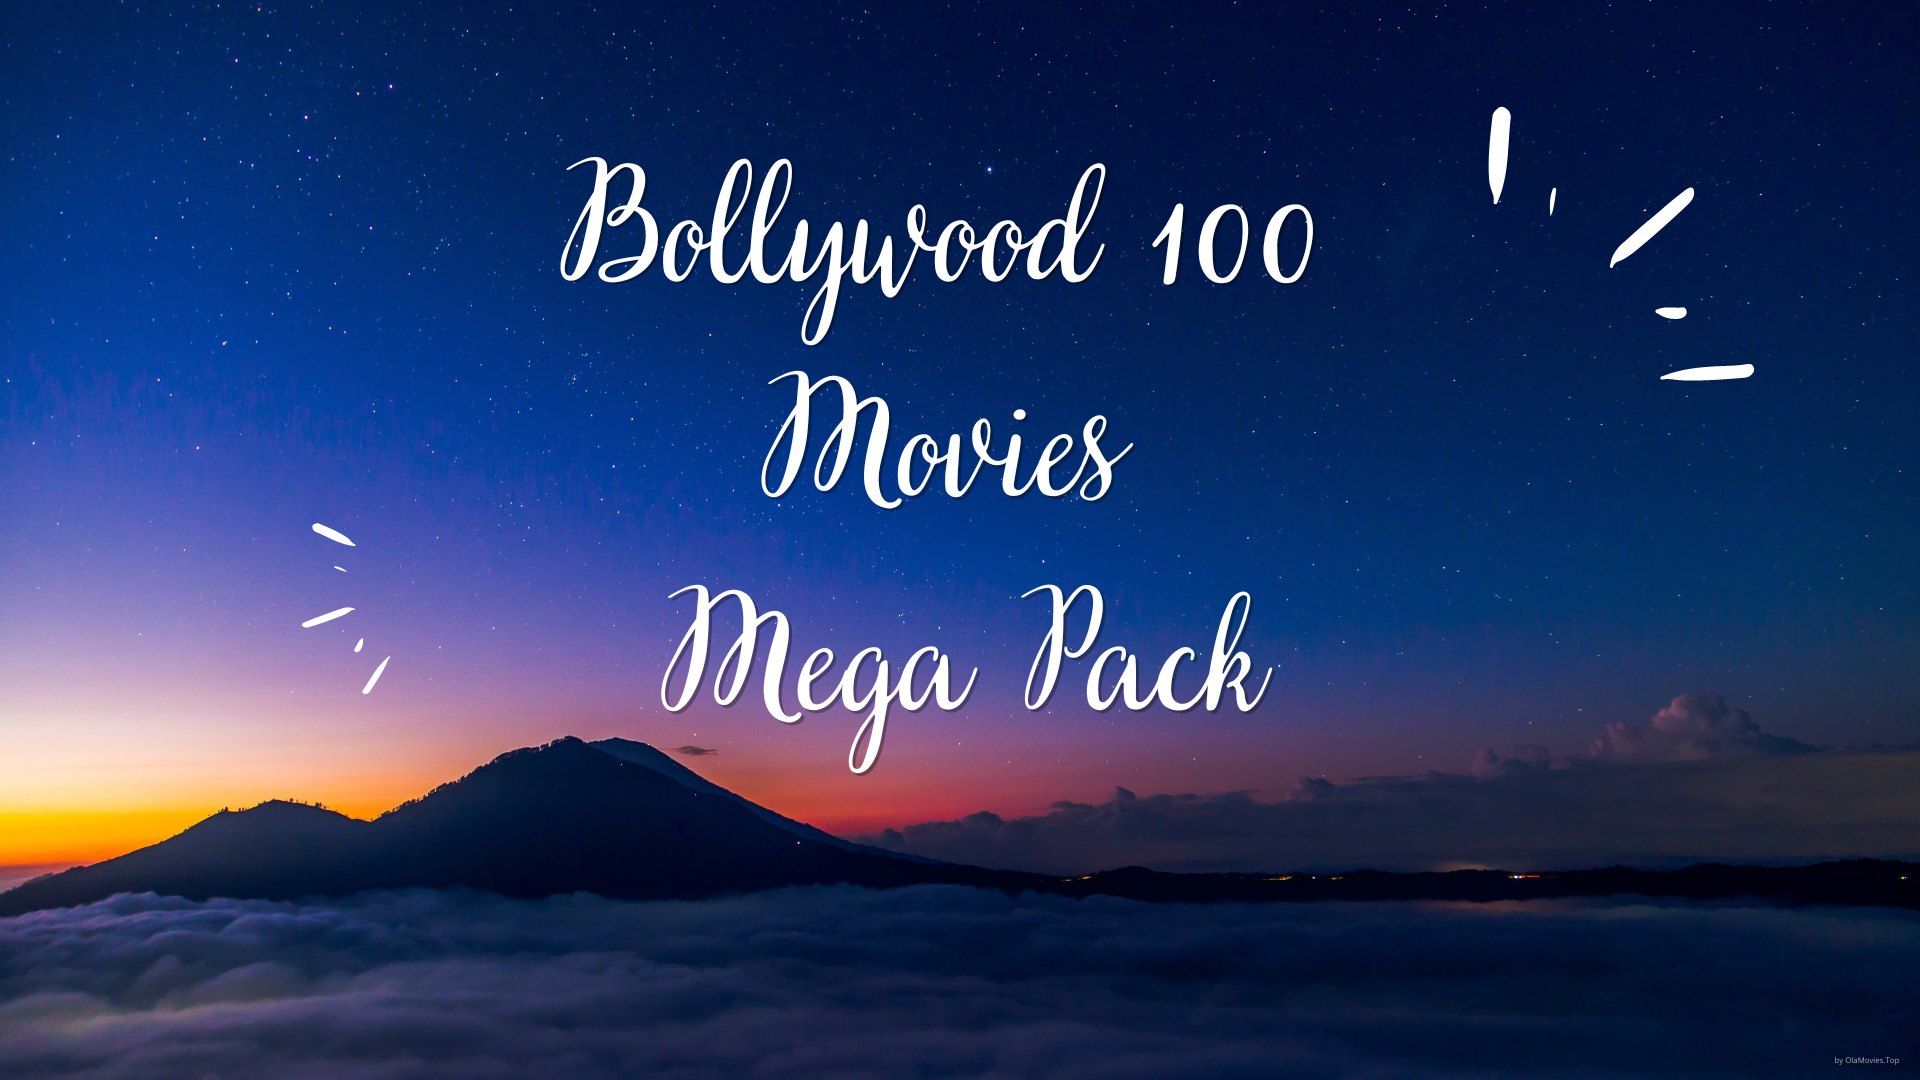 Bollywood 100 Movies Mega Pack Google Drive